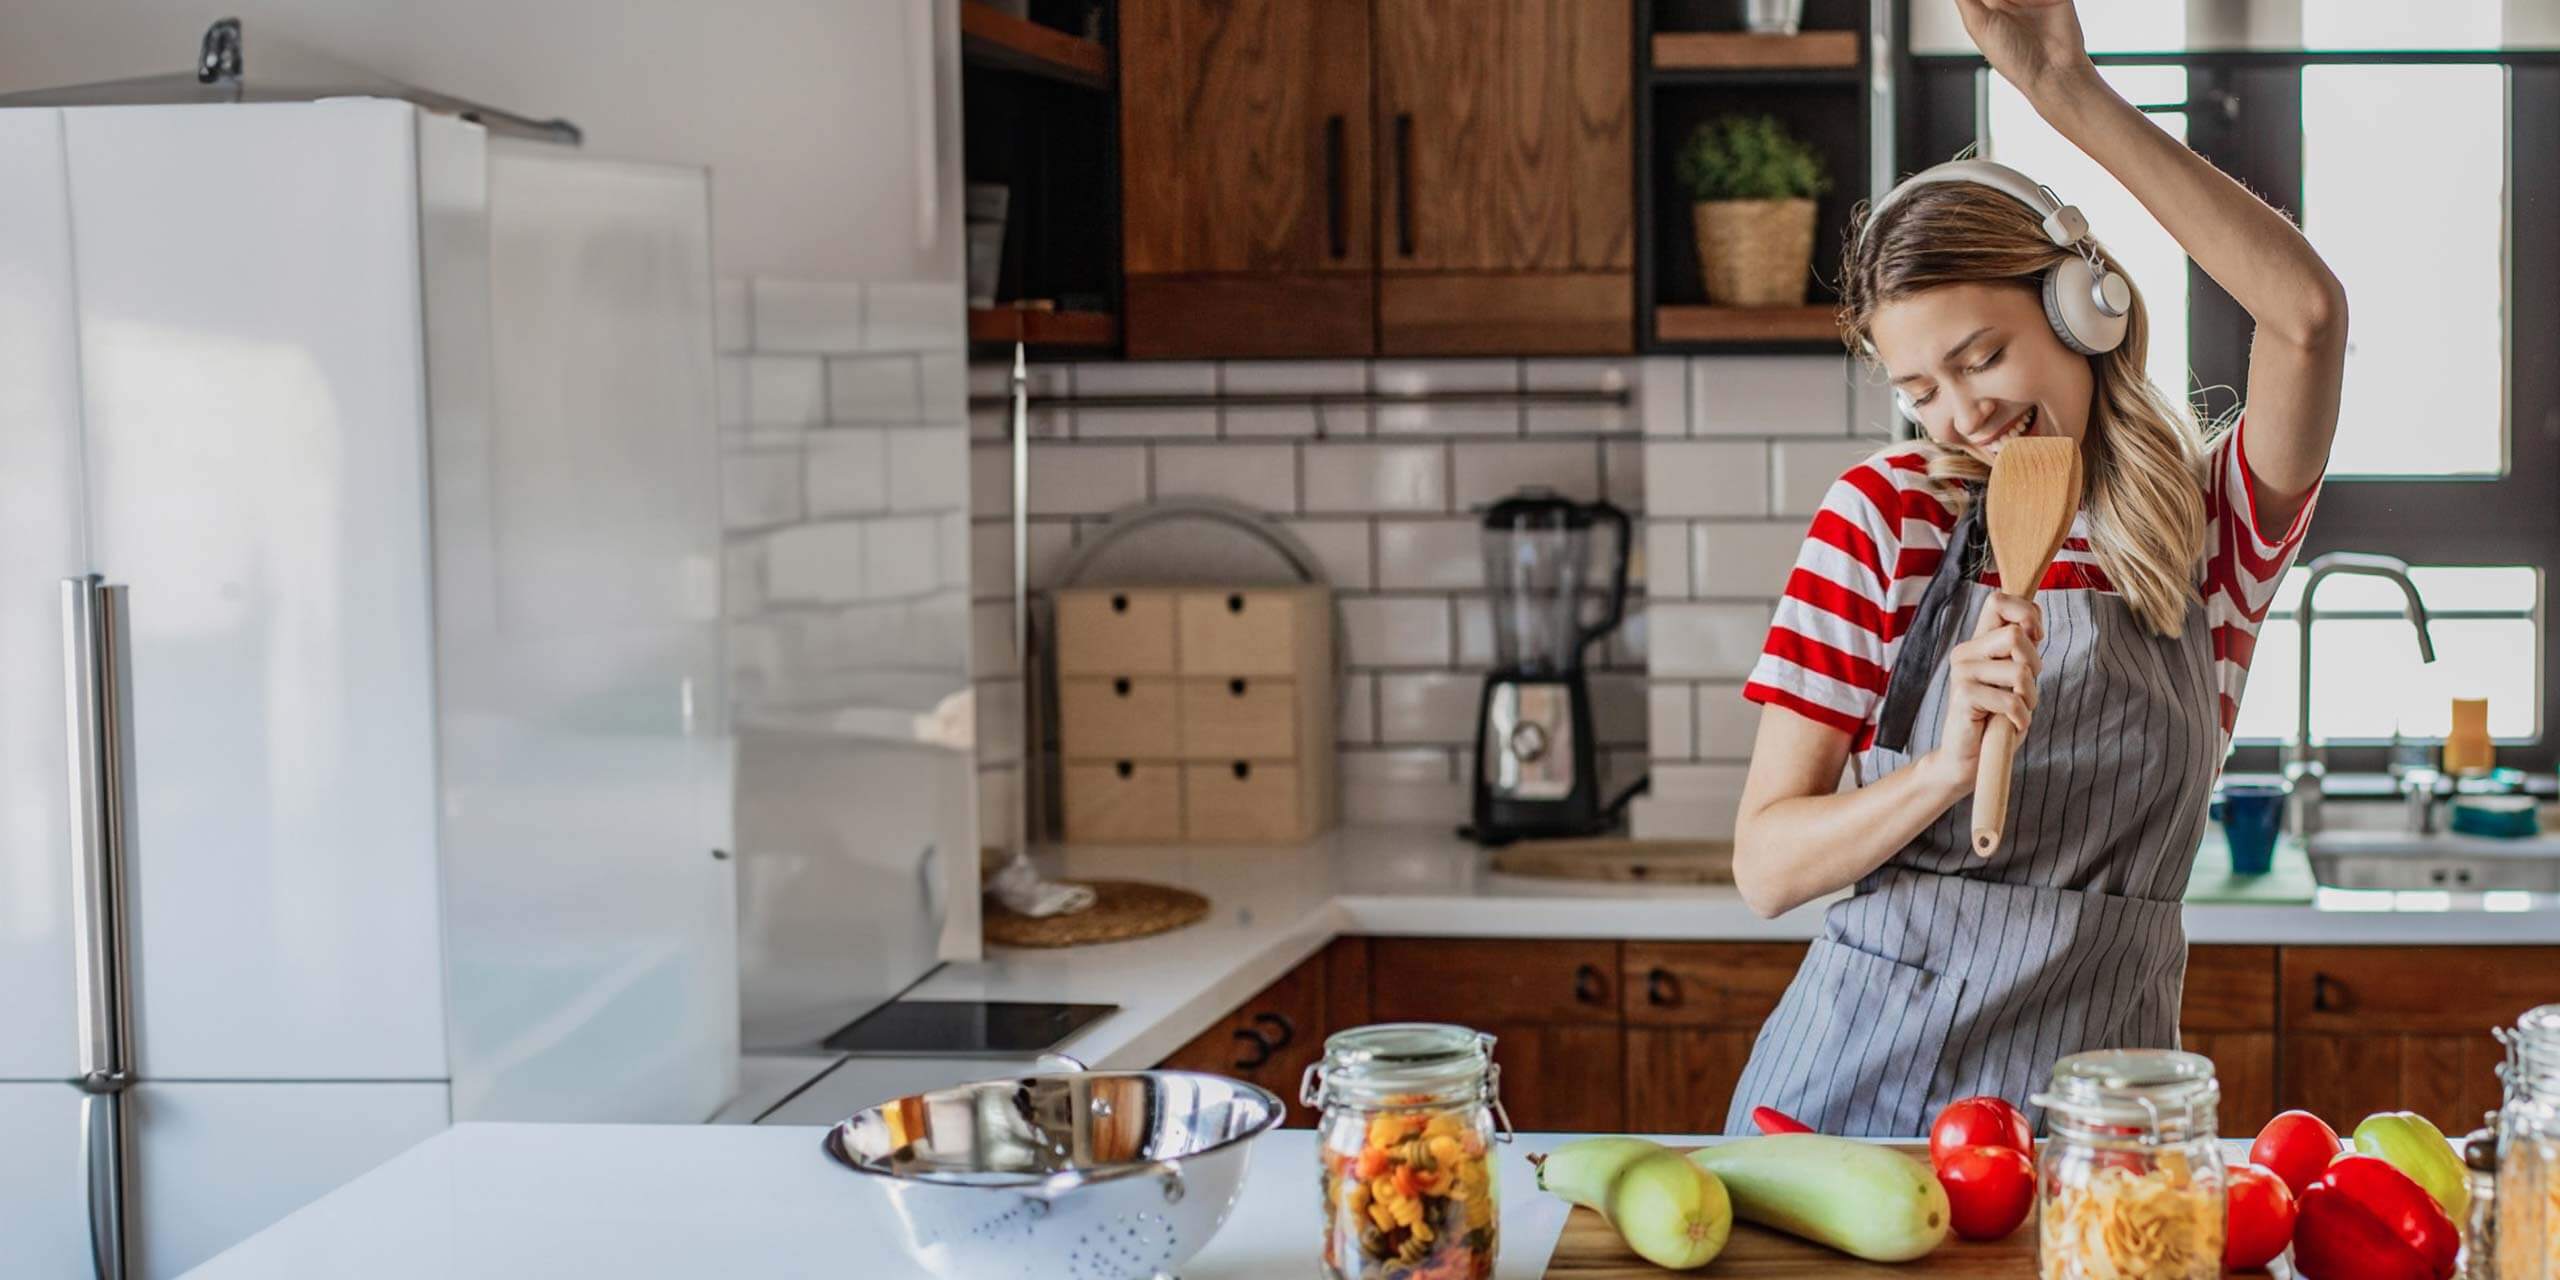 Eine fröhliche Person kocht in einer hellen Küche, tanzt, während sie einen Holzlöffel wie ein Mikrofon hält, während auf der Theke frische Zutaten darauf warten, zubereitet zu werden.